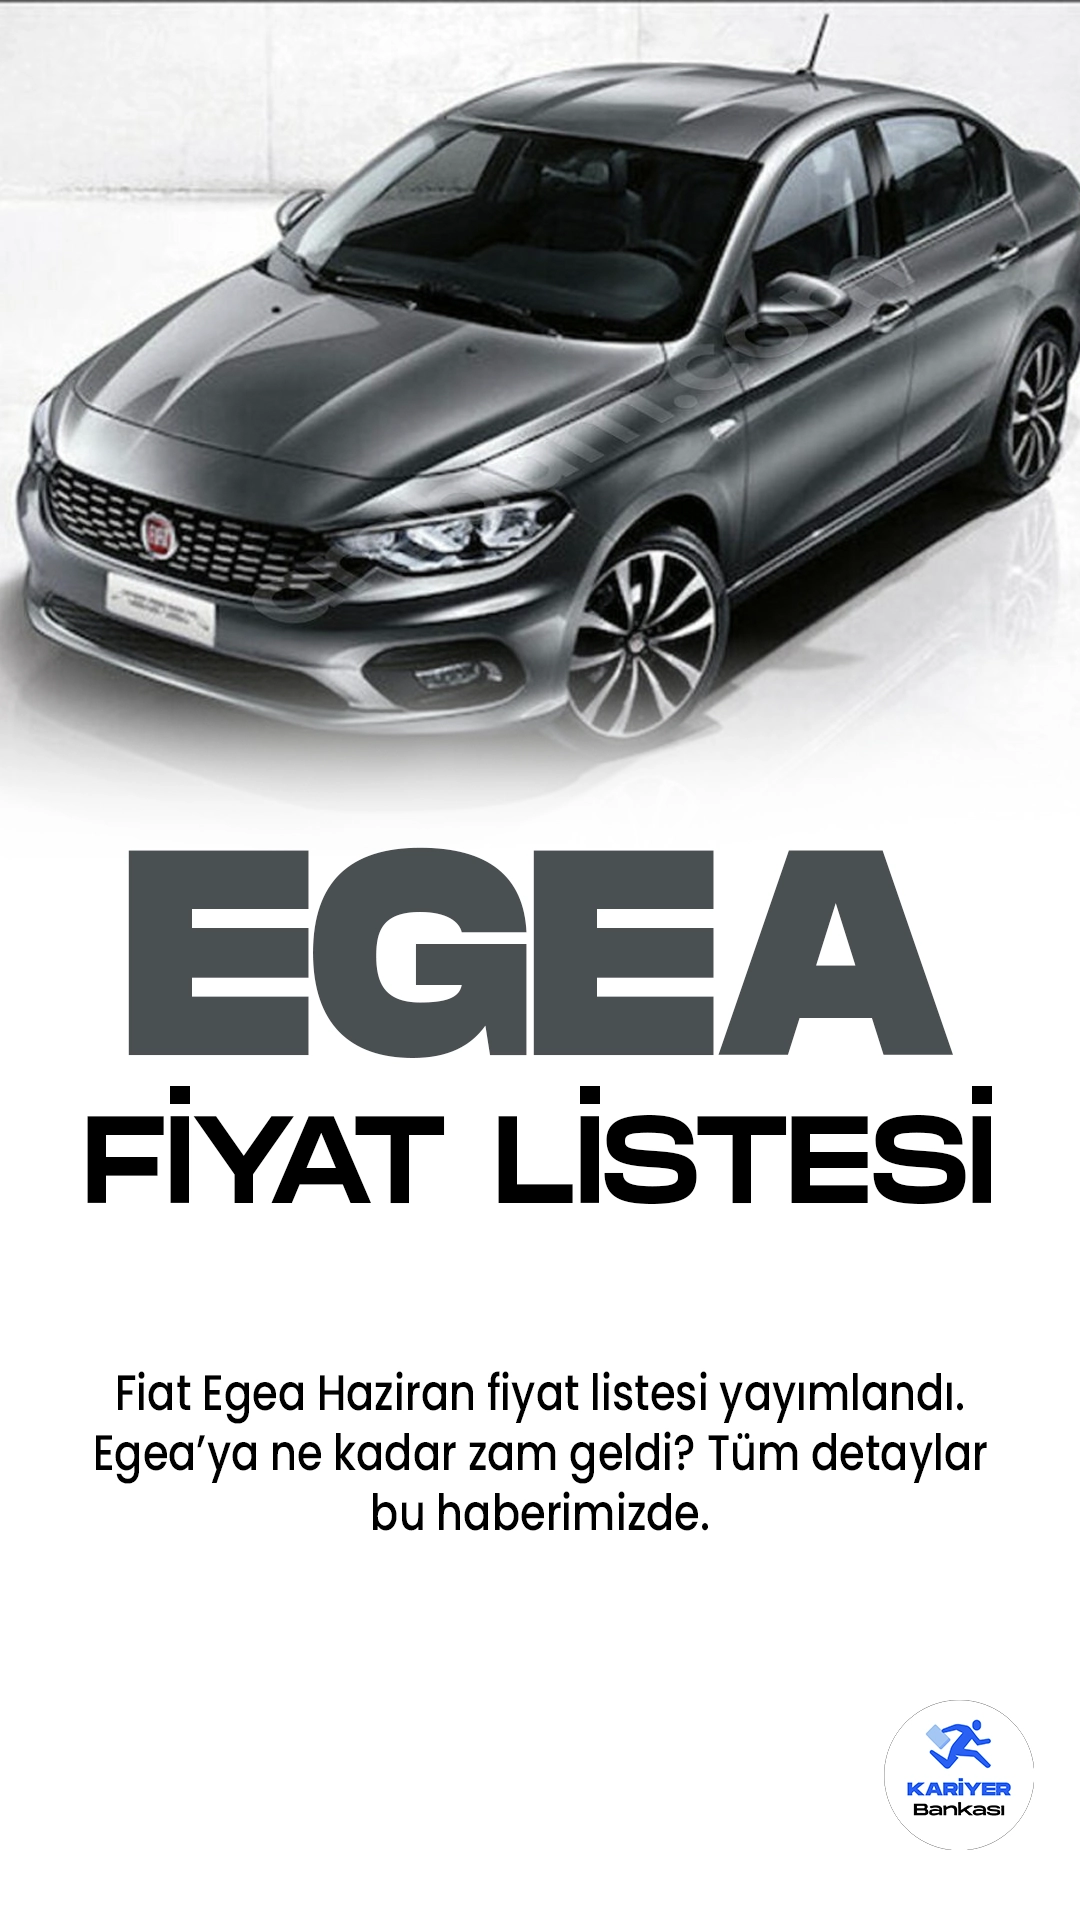 Fiat Egea Haziran 2023 Fiyat Listesi Yayımlandı.Fiat, başarılı ve popüler araç modellerinden biri olan Fiat Egea ile dikkatleri üzerine çekiyor. Yenilikçi tasarımı ve üstün performansıyla öne çıkan Egea, kullanıcıların beğenisini kazanıyor. Şehir içi ve uzun yolculuklar için ideal bir seçenek olan Egea, geniş iç mekânı ve konforlu sürüşüyle öne çıkıyor. Ekonomik yakıt tüketimiyle de kullanıcılarına avantaj sağlayan Egea, aynı zamanda güvenlik donanımlarıyla da donatılmış durumda. İleri teknoloji özellikleriyle birleşen bu araç, kullanıcılara kullanışlı ve keyifli bir sürüş deneyimi sunuyor. Fiat Egea, güvenilirliği ve kullanıcı dostu özellikleriyle otomobil tutkunlarının tercihi olmaya devam ediyor.